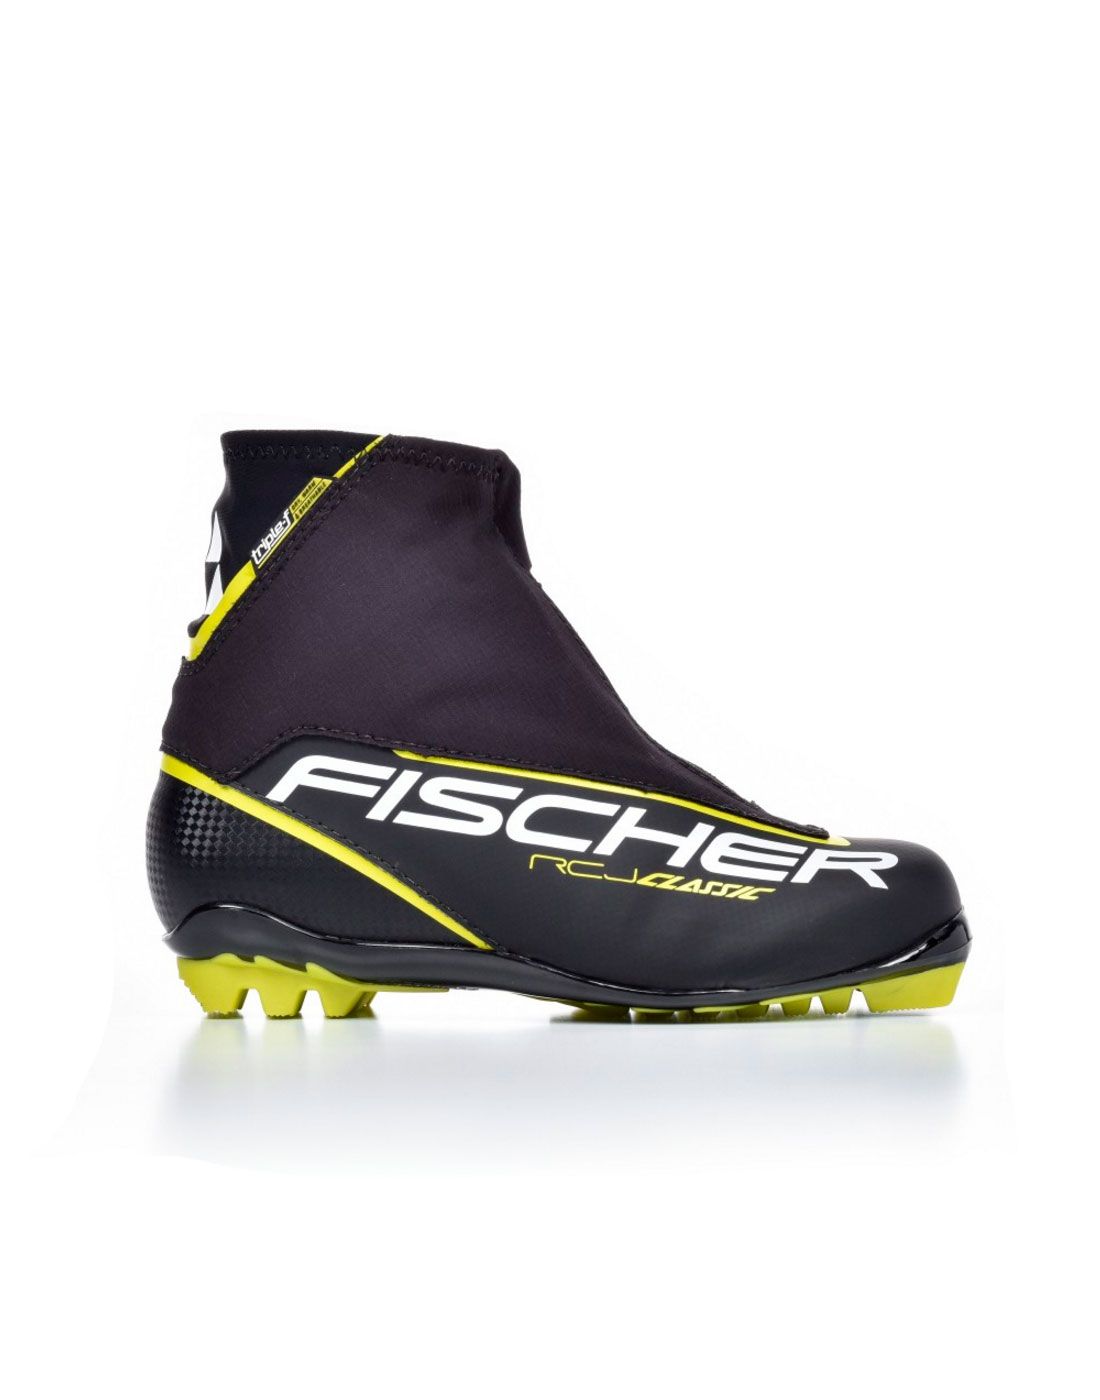 Ботинки лыжные FISCHER RCJ Classic р.42 